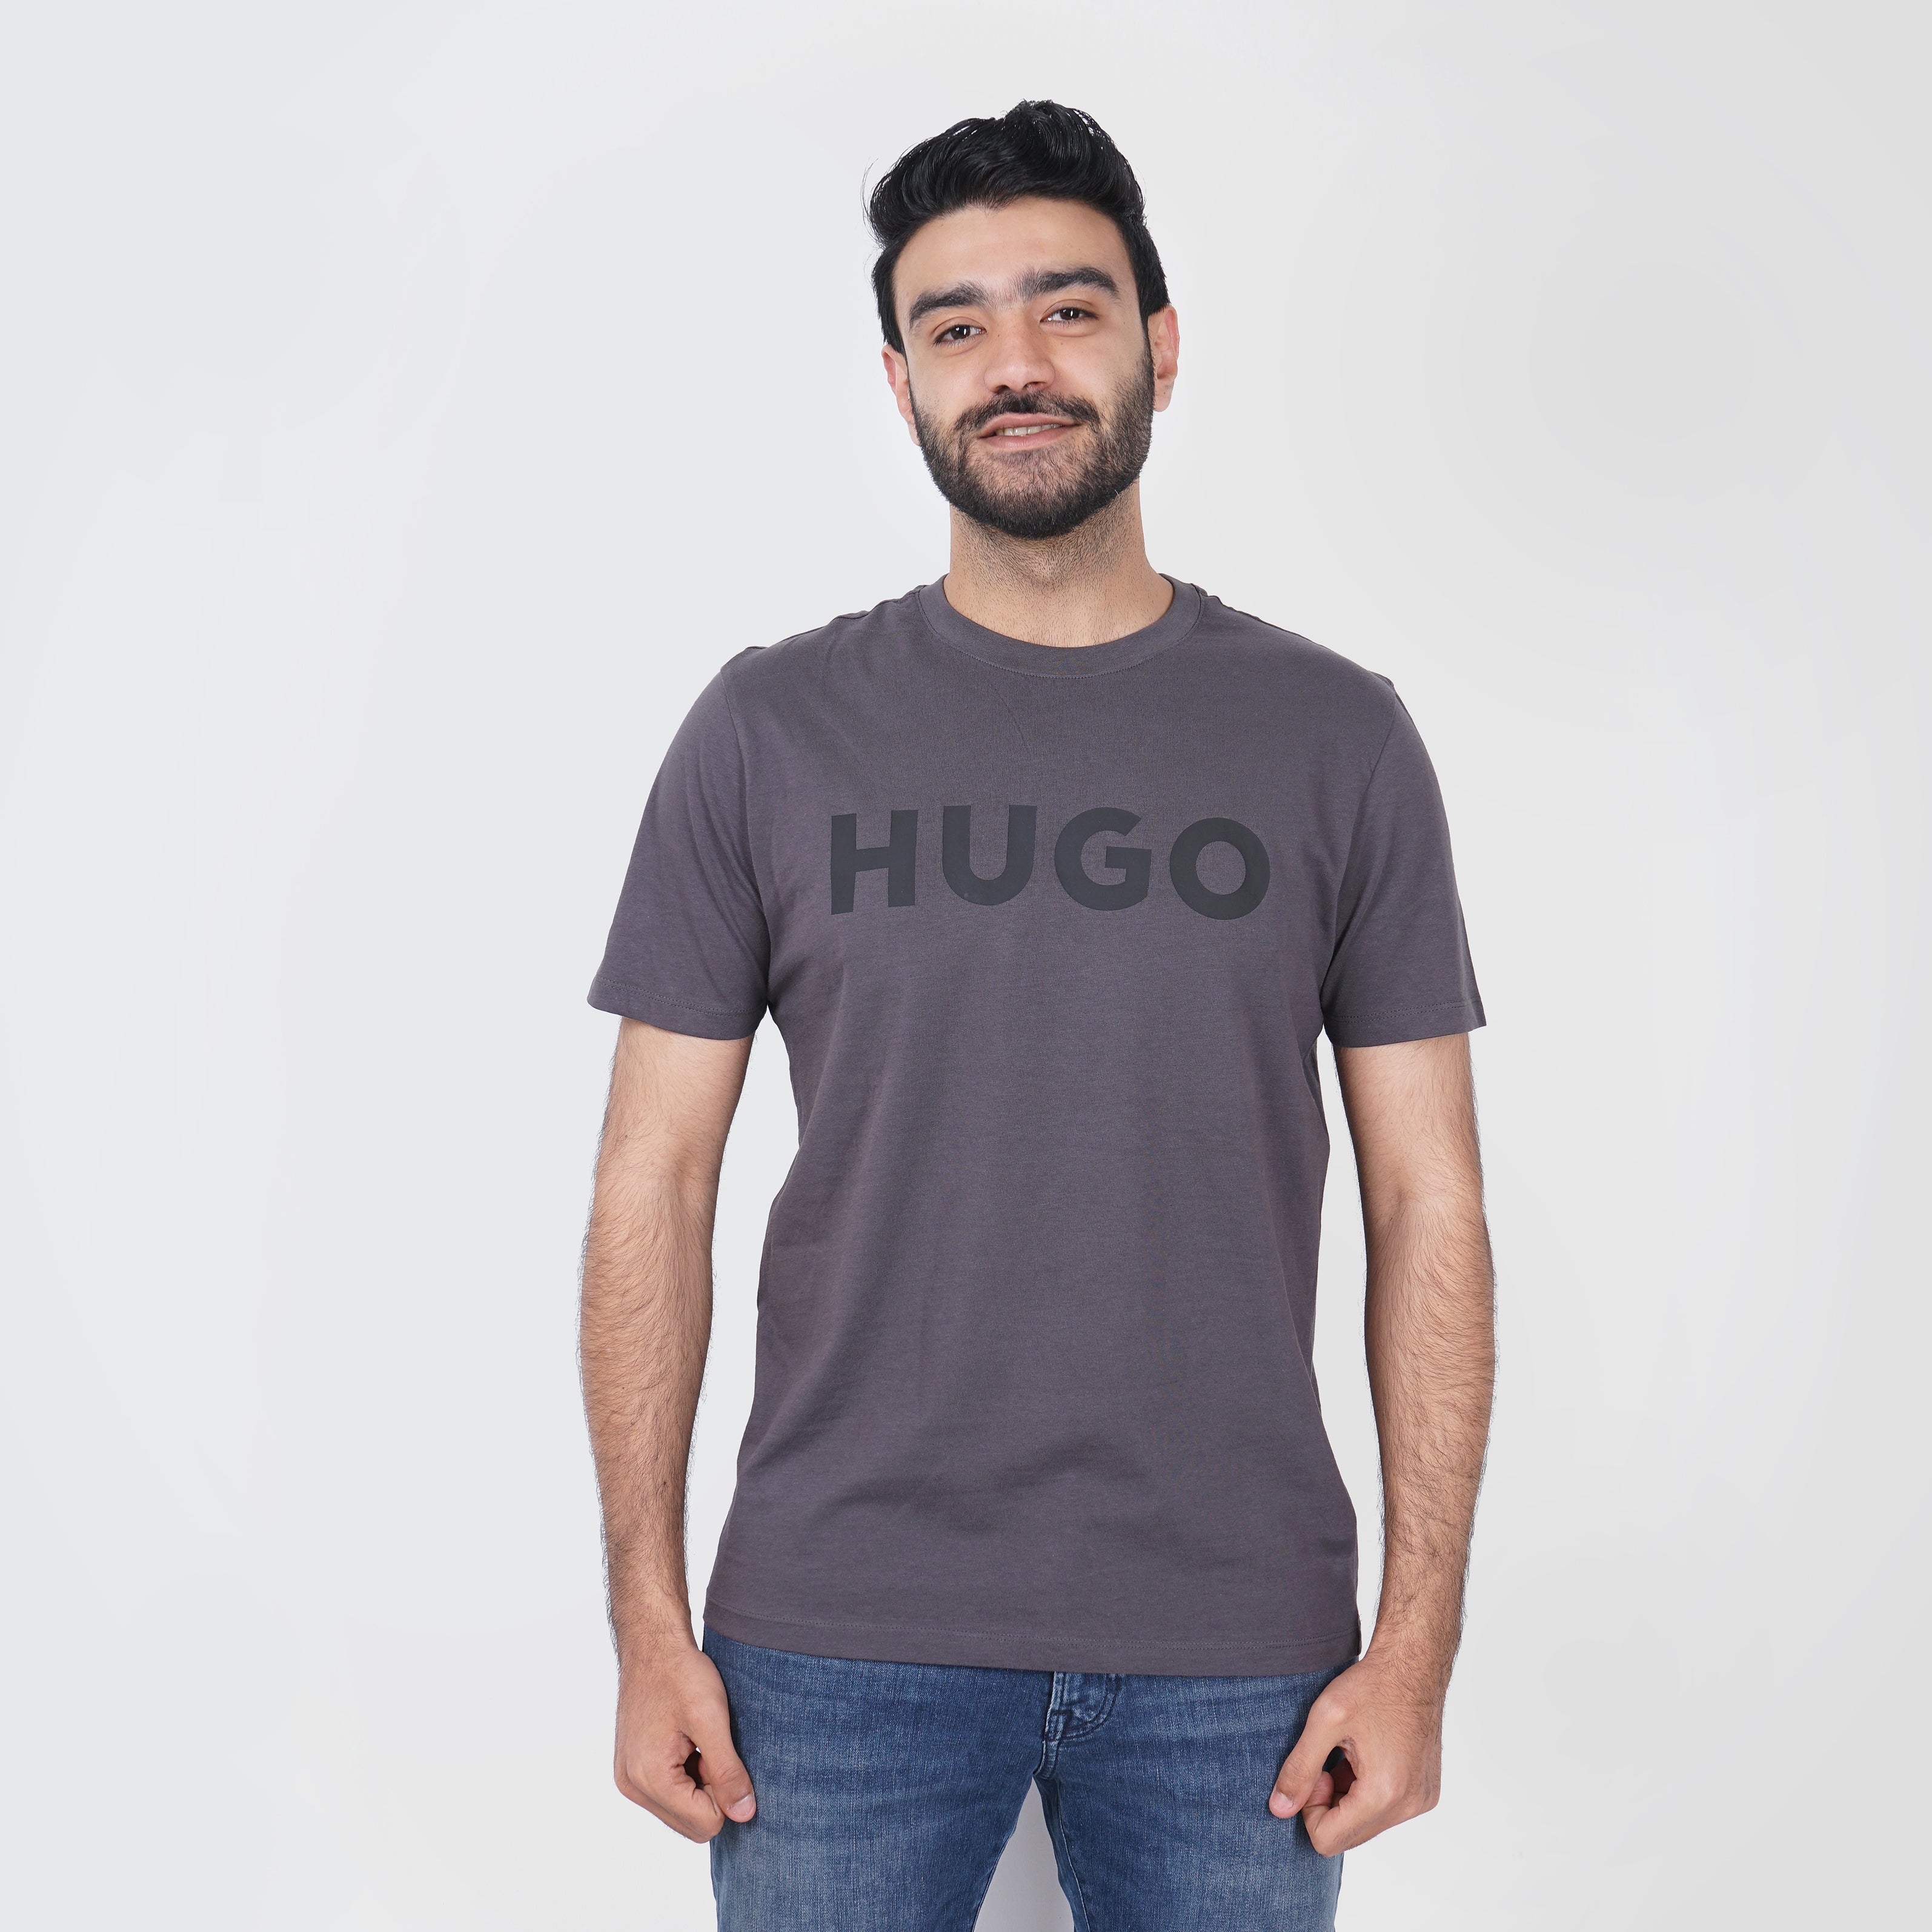 Original HUGO BOSS Grey Graphic T-Shirt - Marca Deals - Hugo Boss